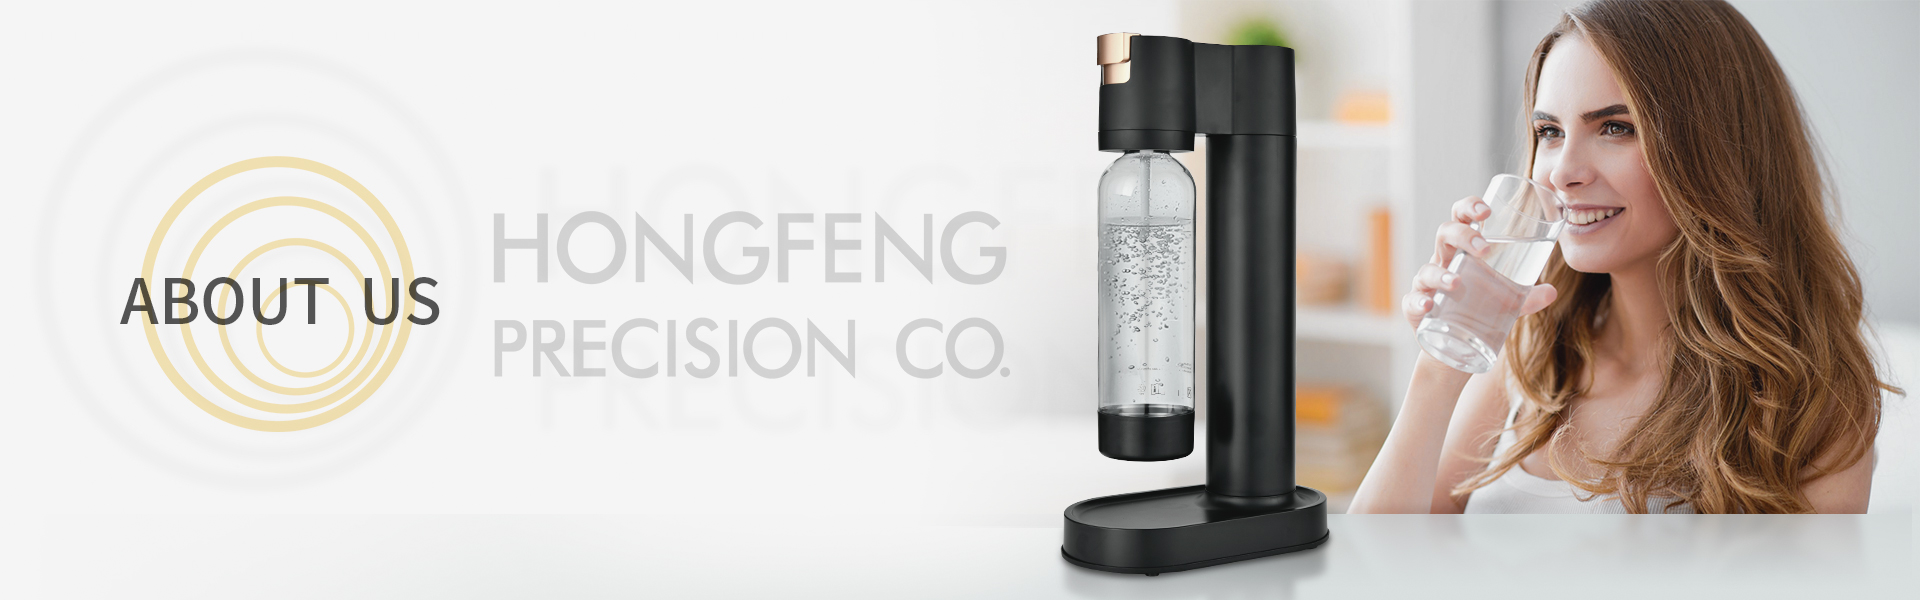 Zhejiang Hongfeng Precision Co.,Ltd